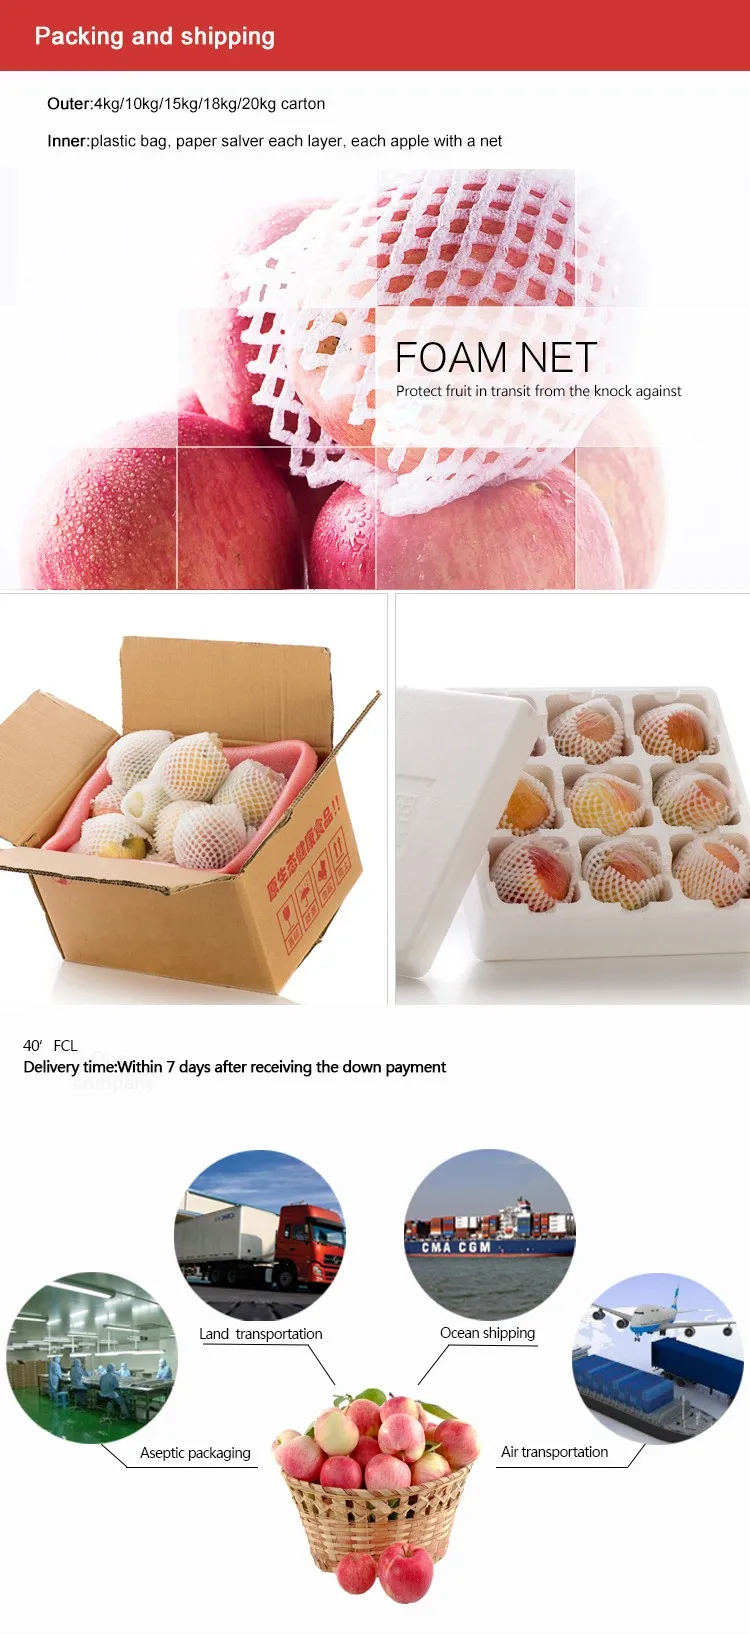 Fuji ပန်းသီးကို တရုတ်နိုင်ငံသို့ တင်ပို့ရောင်းချသည်။